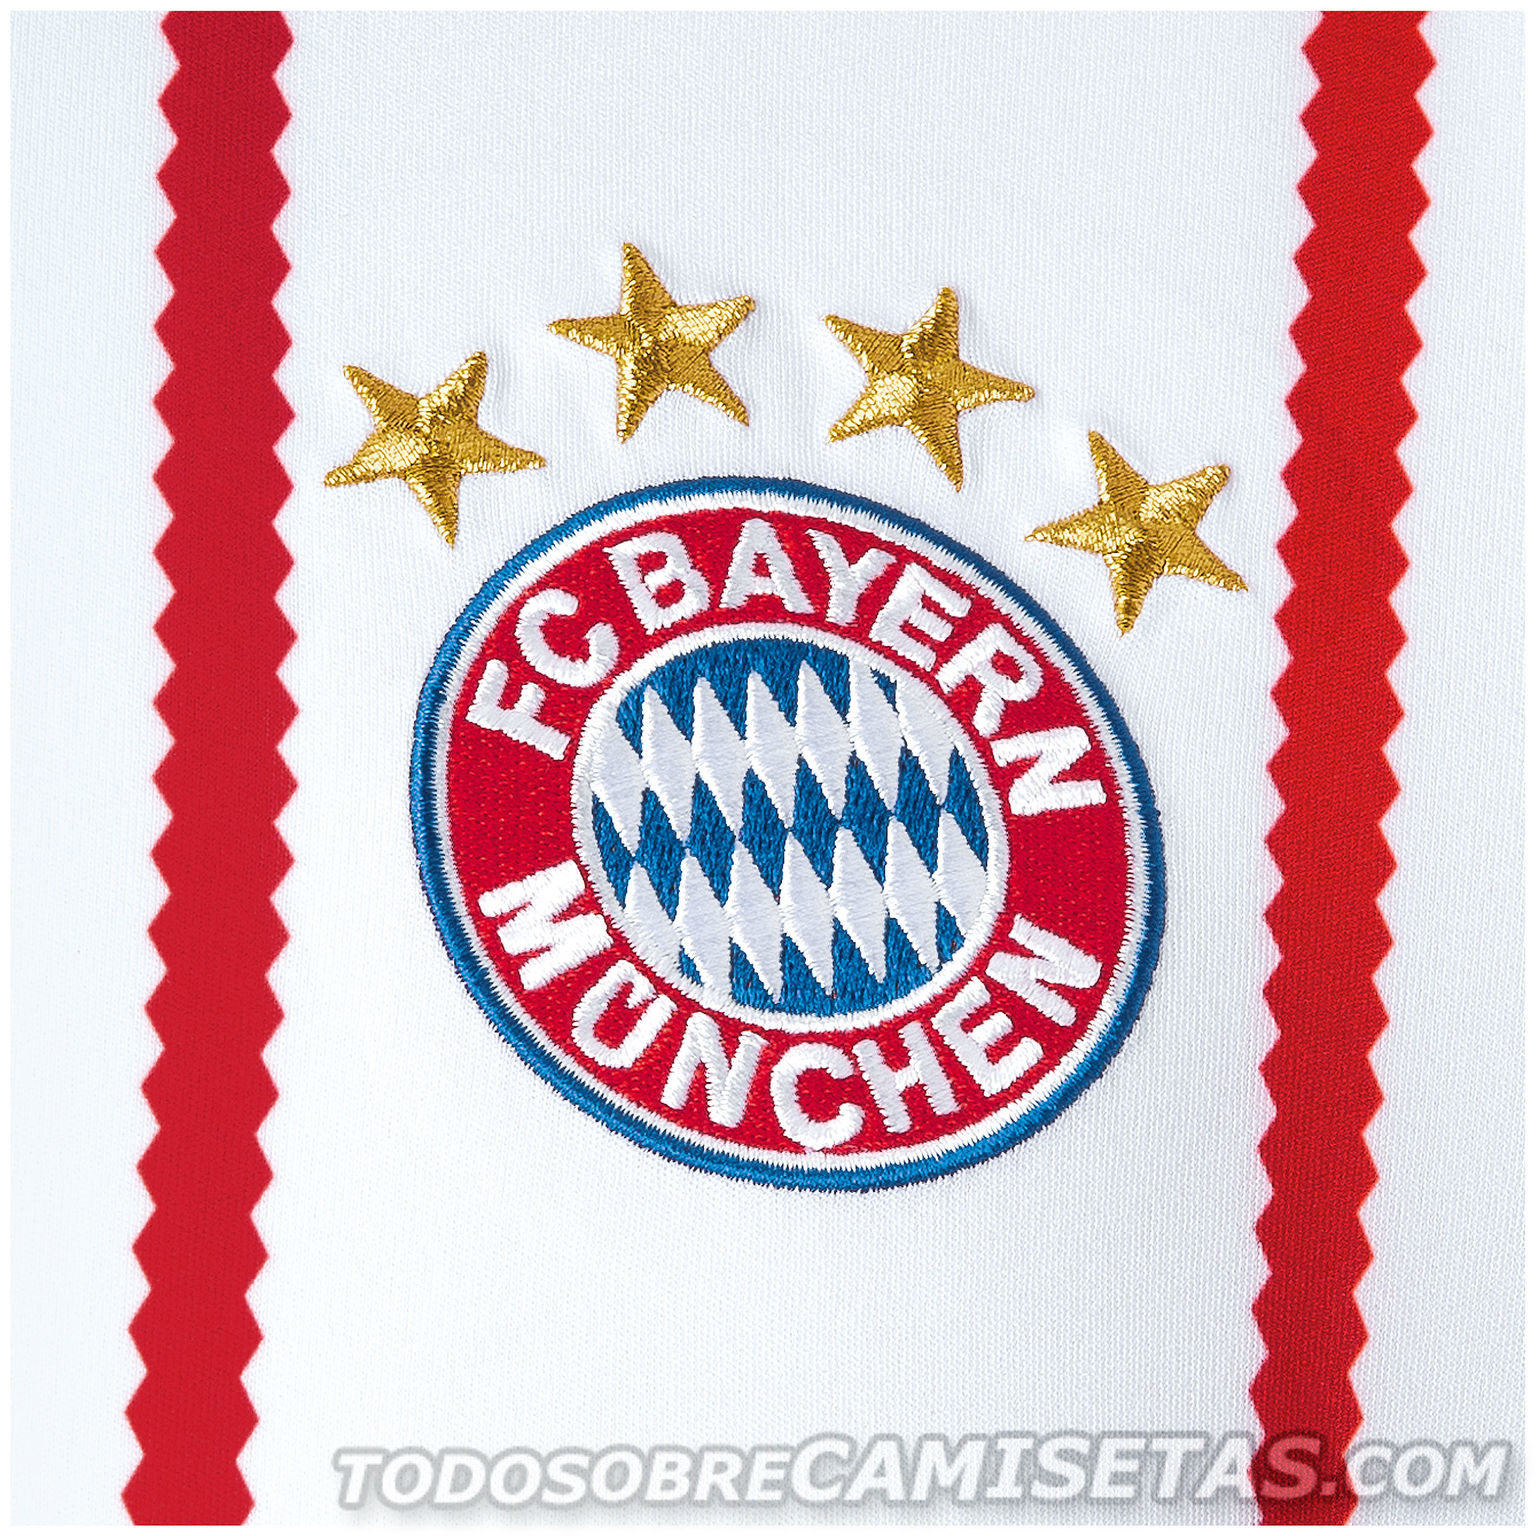 Bayern Munich 2017-18 adidas Third Kit